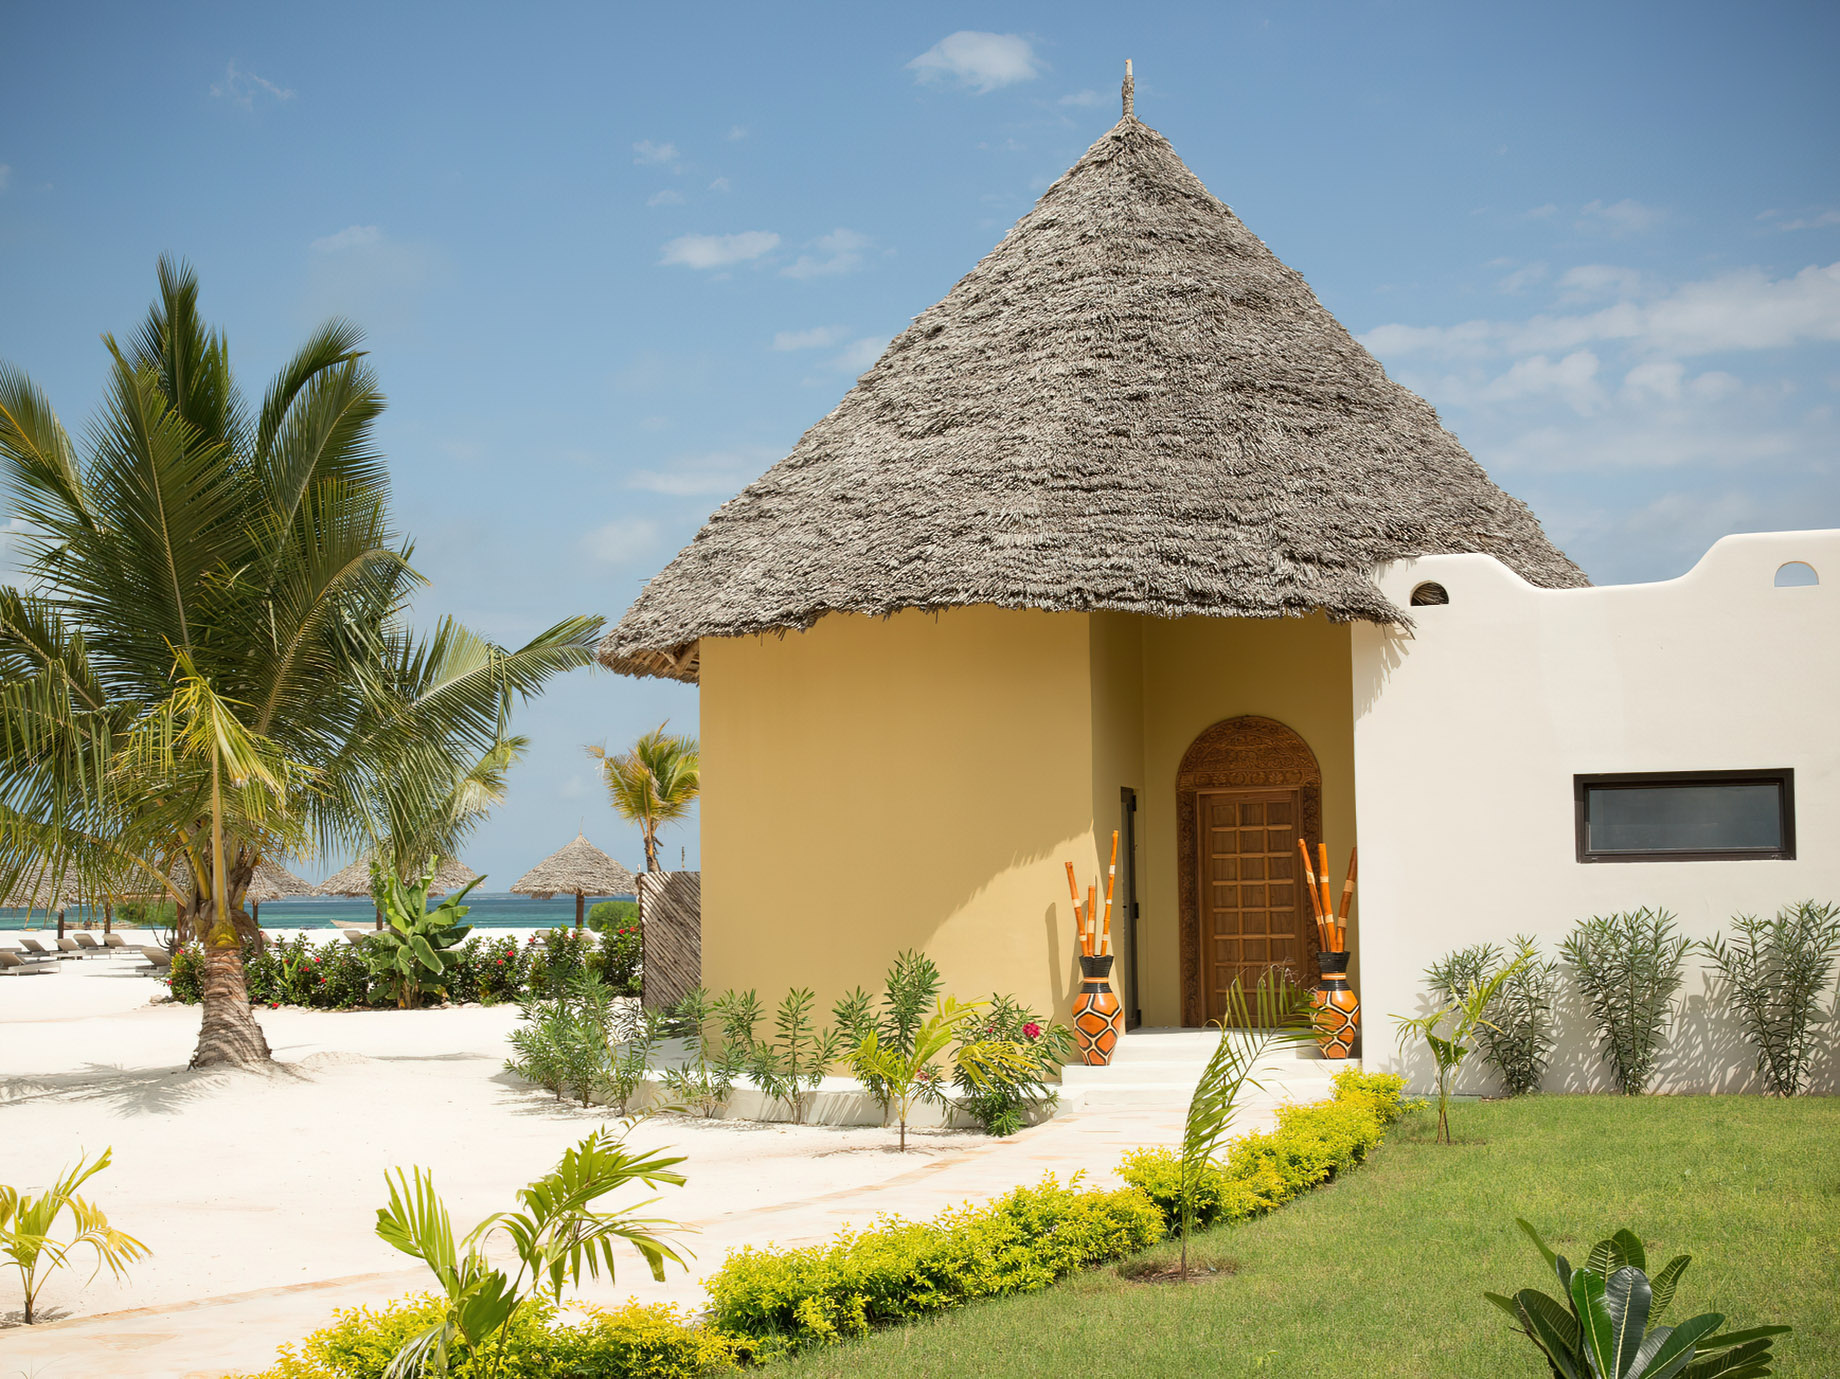 Gold Zanzibar Beach House & Spa Resort - Nungwi, Zanzibar, Tanzania - Beach Villa Entrance